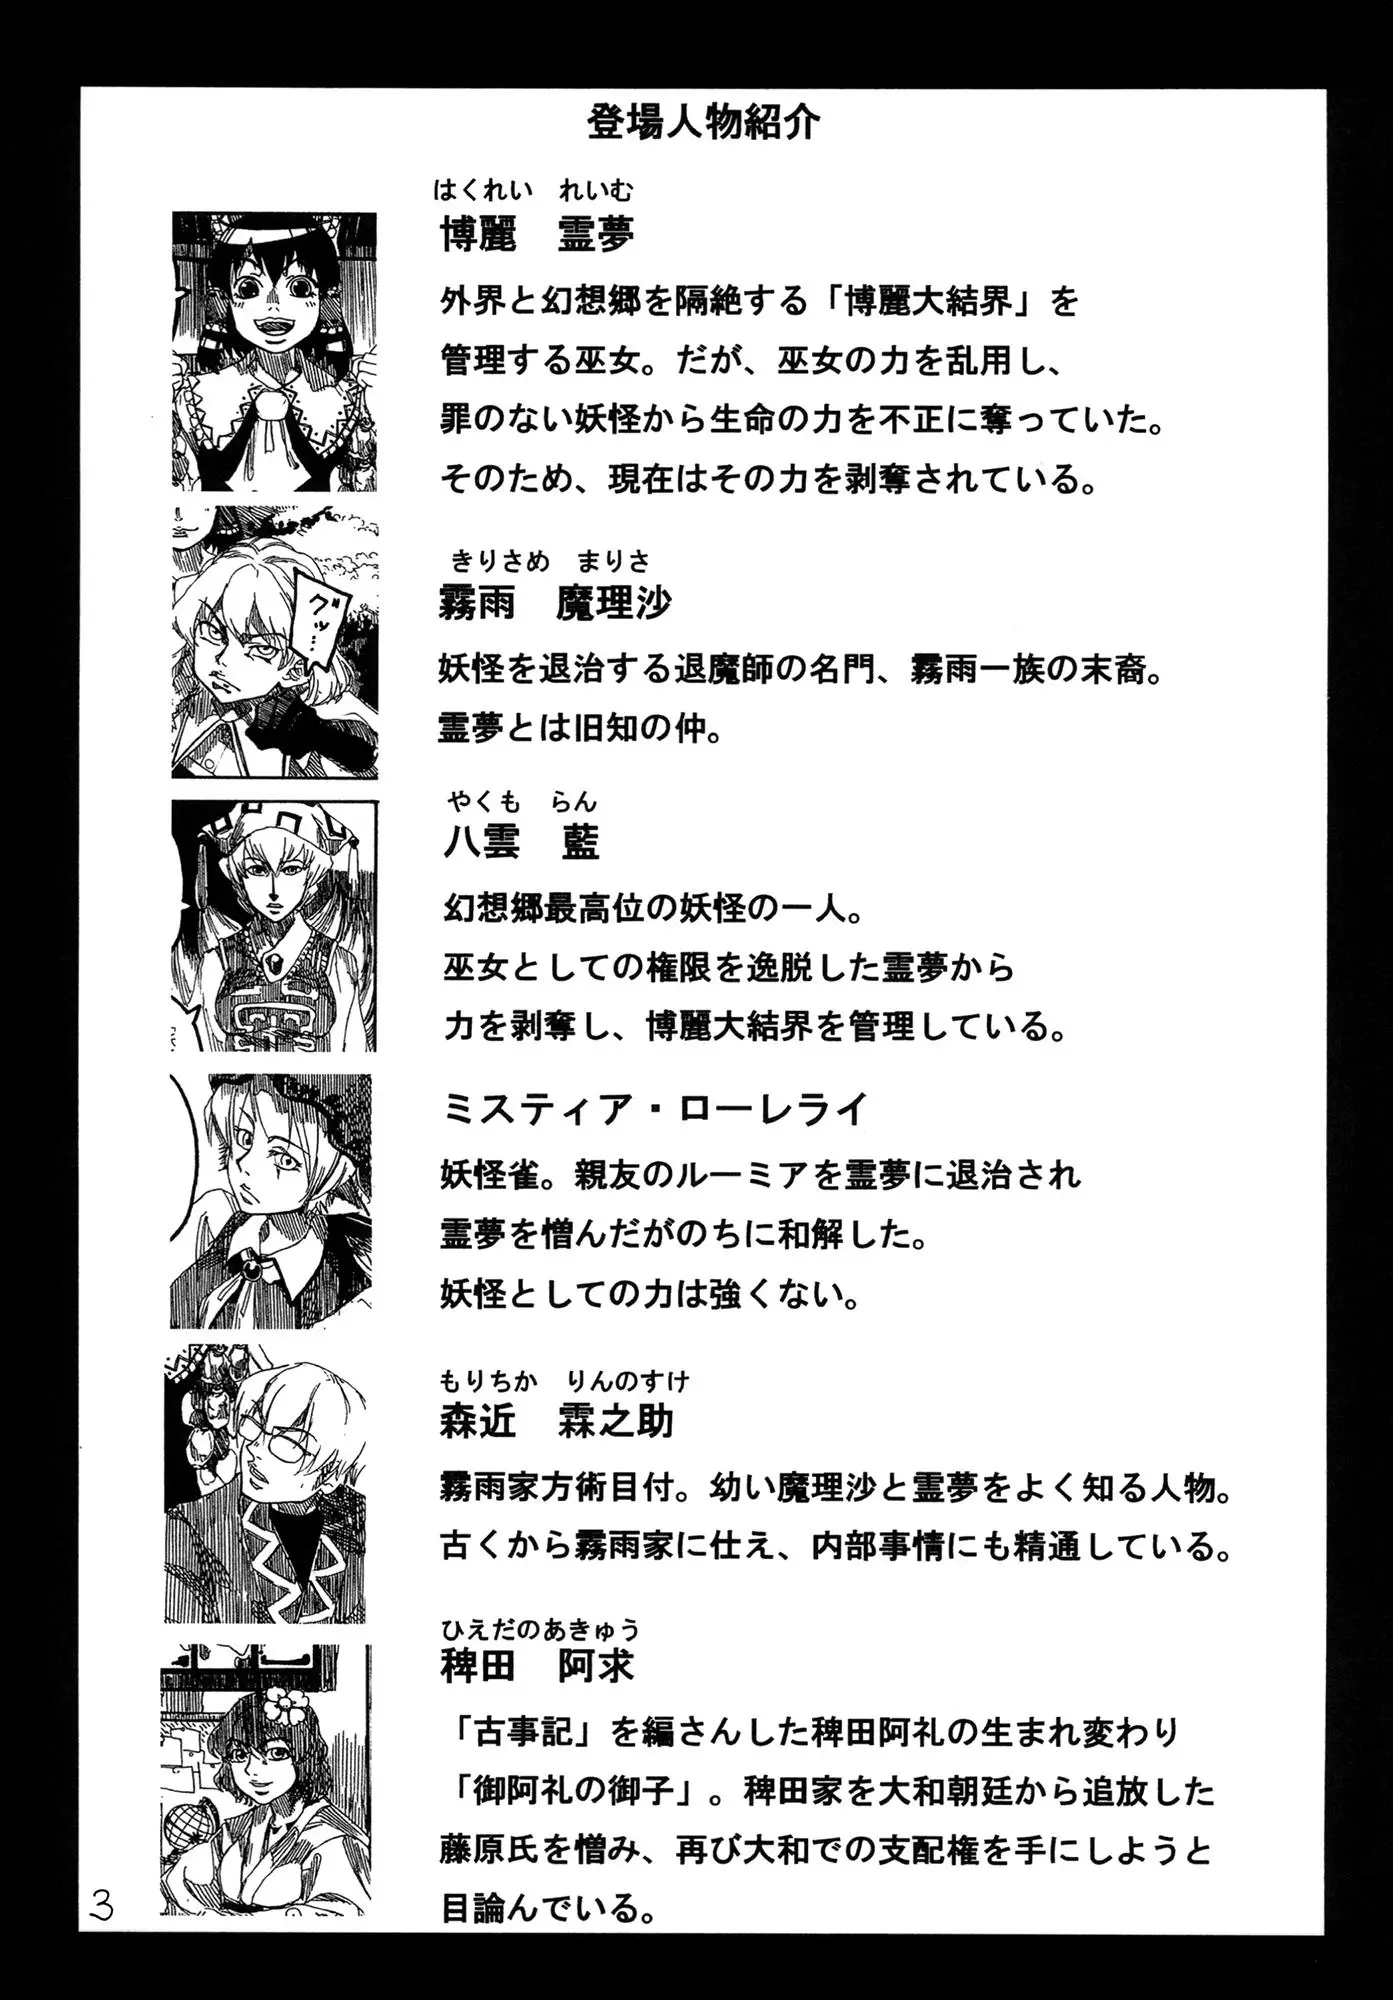 Touhou - Rainmaker (Doujinshi) - 3 page 4-530c9d78